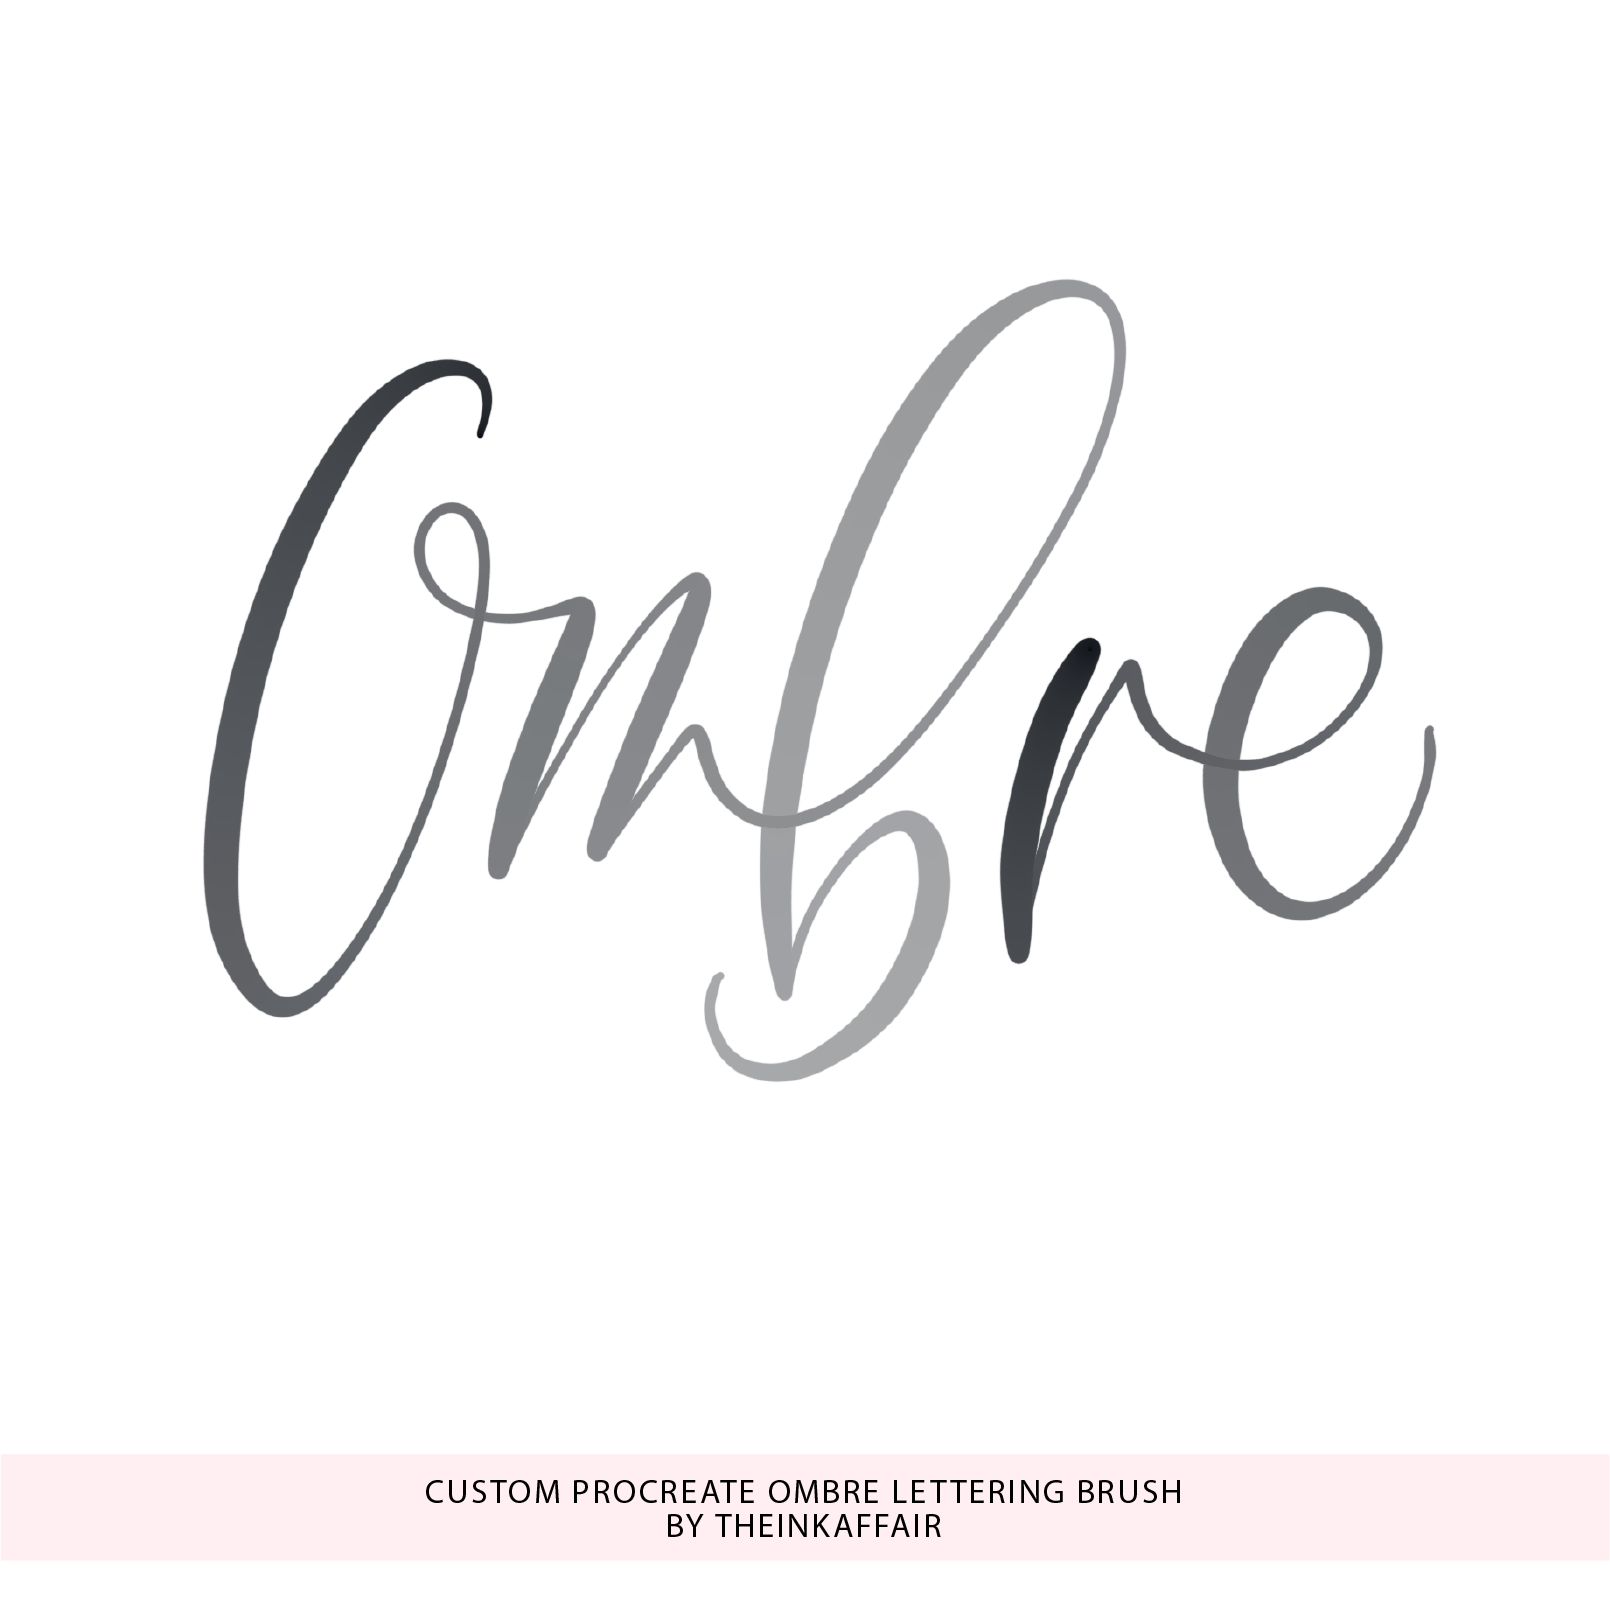 Custom Procreate Ombre Lettering Brush